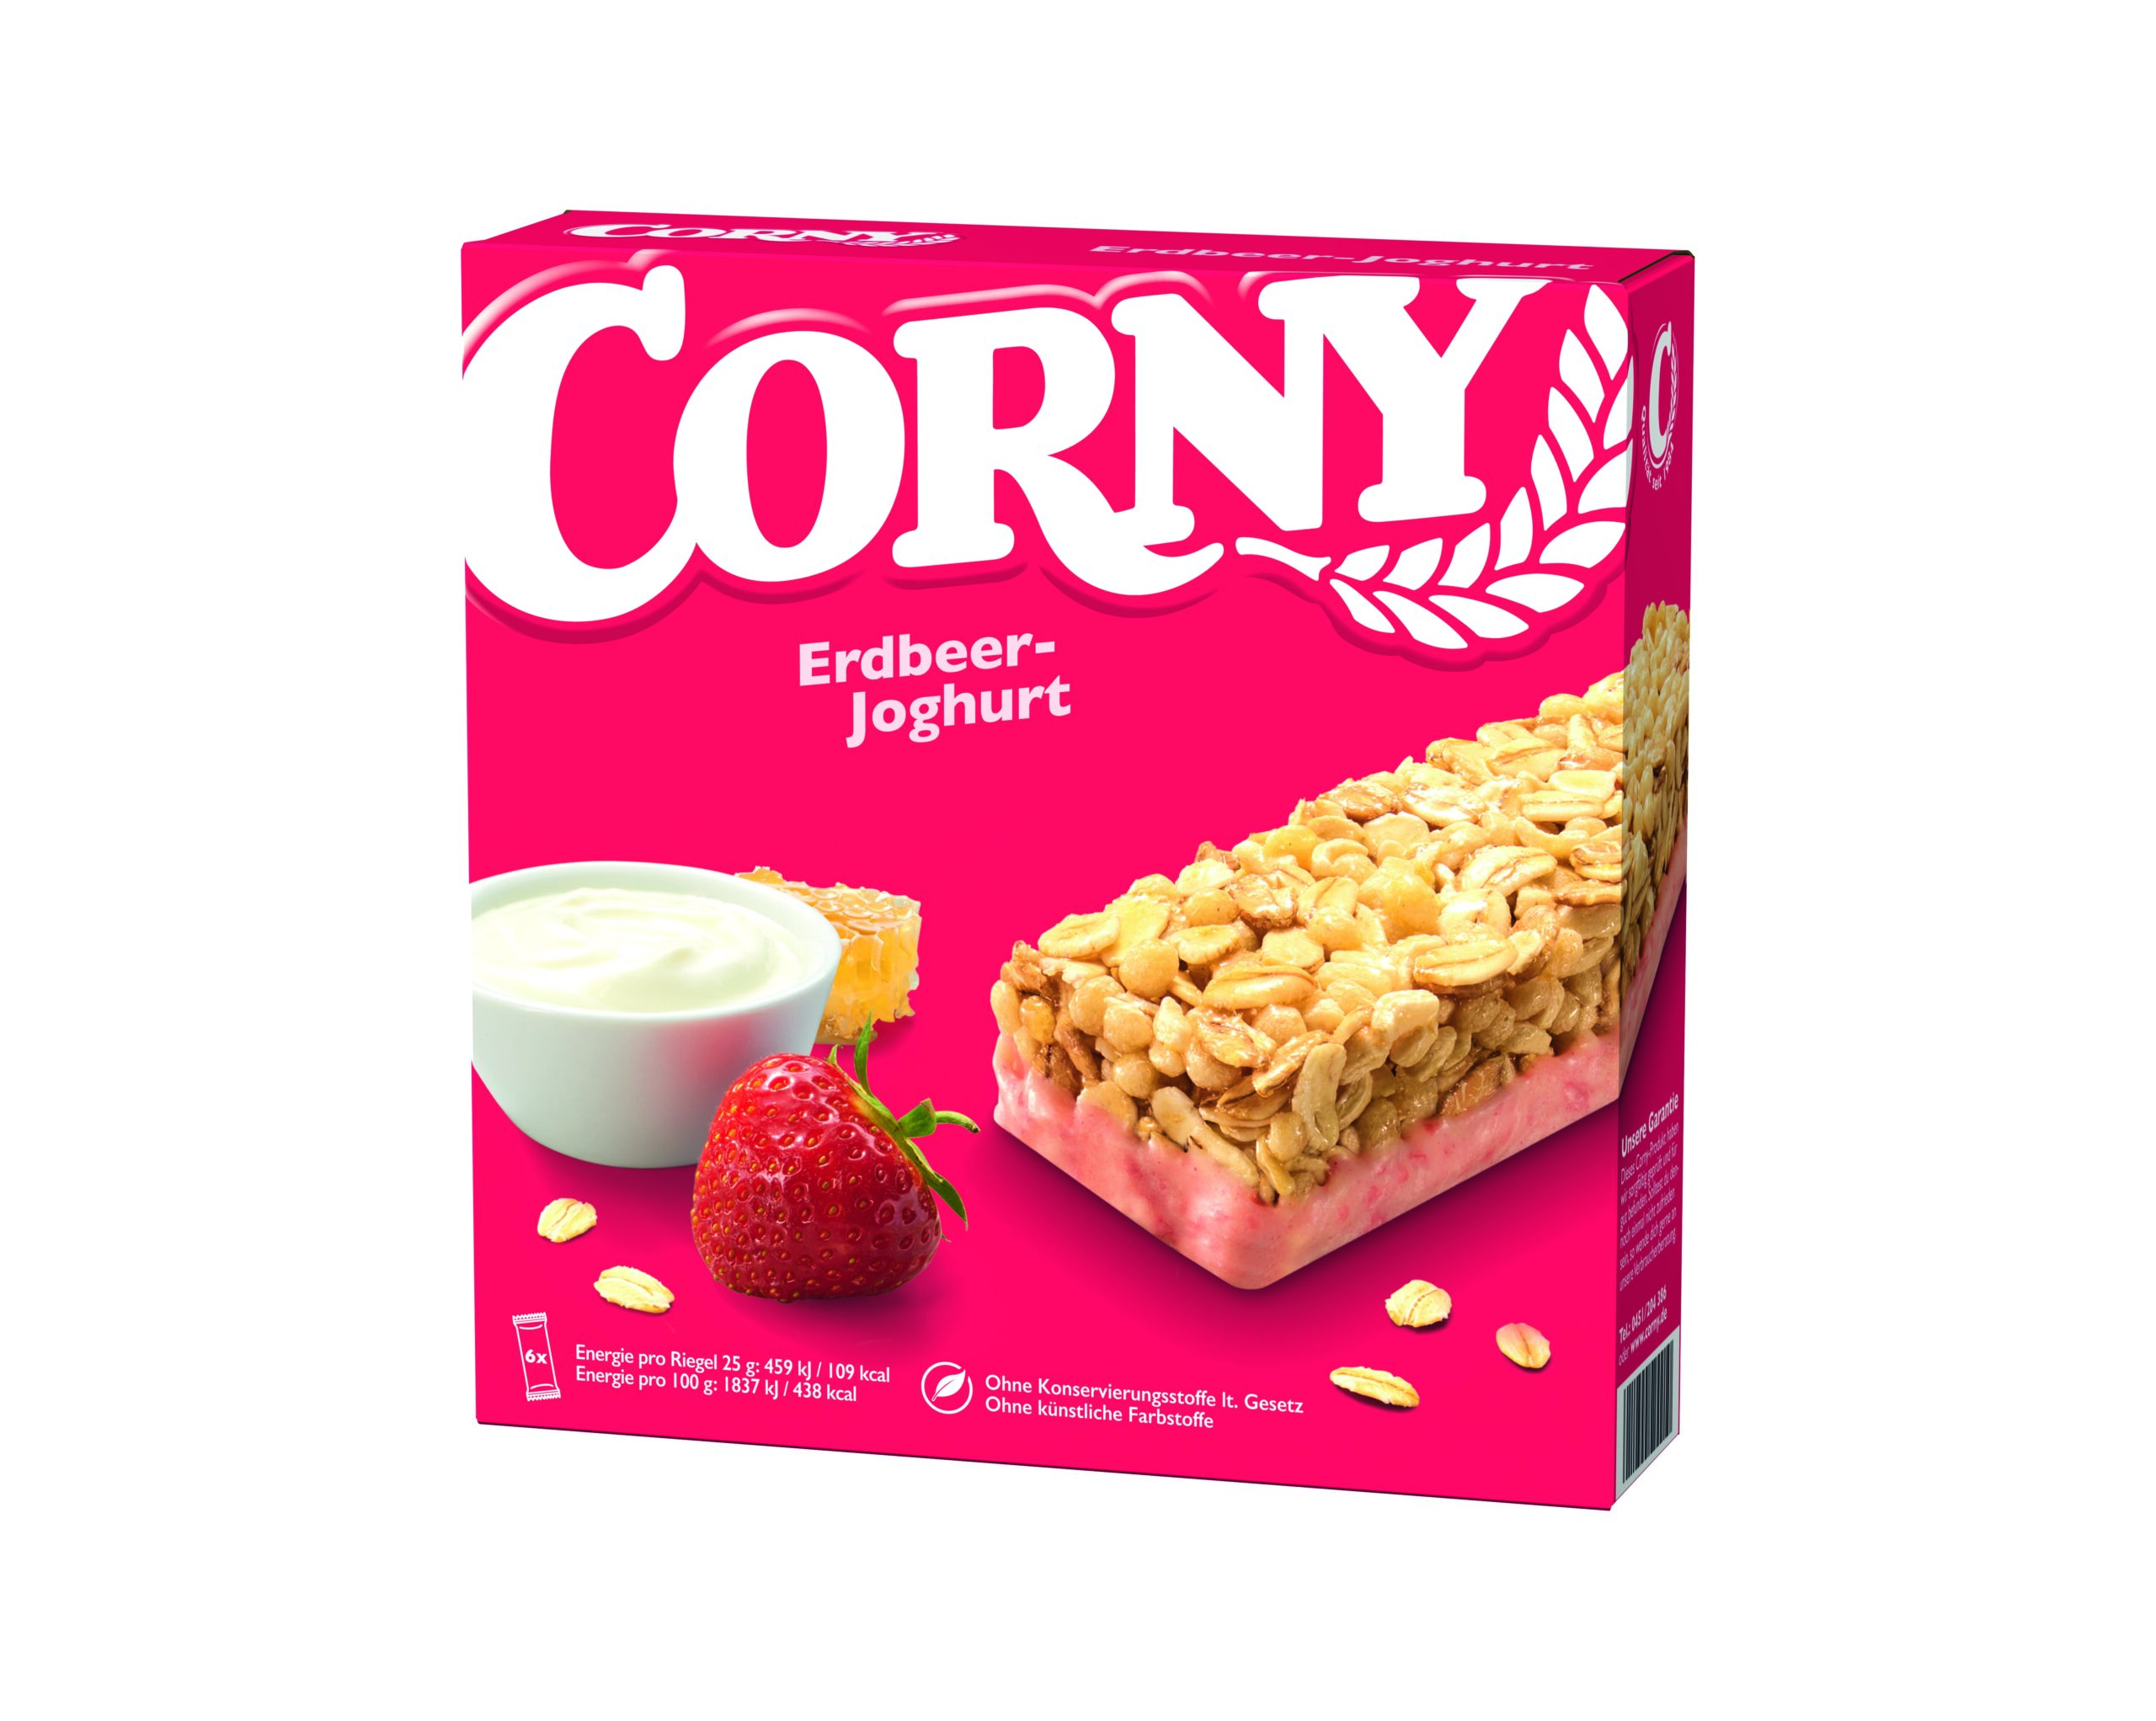 Corny Classic Erdbeer-Joghurt 6x25g Packung